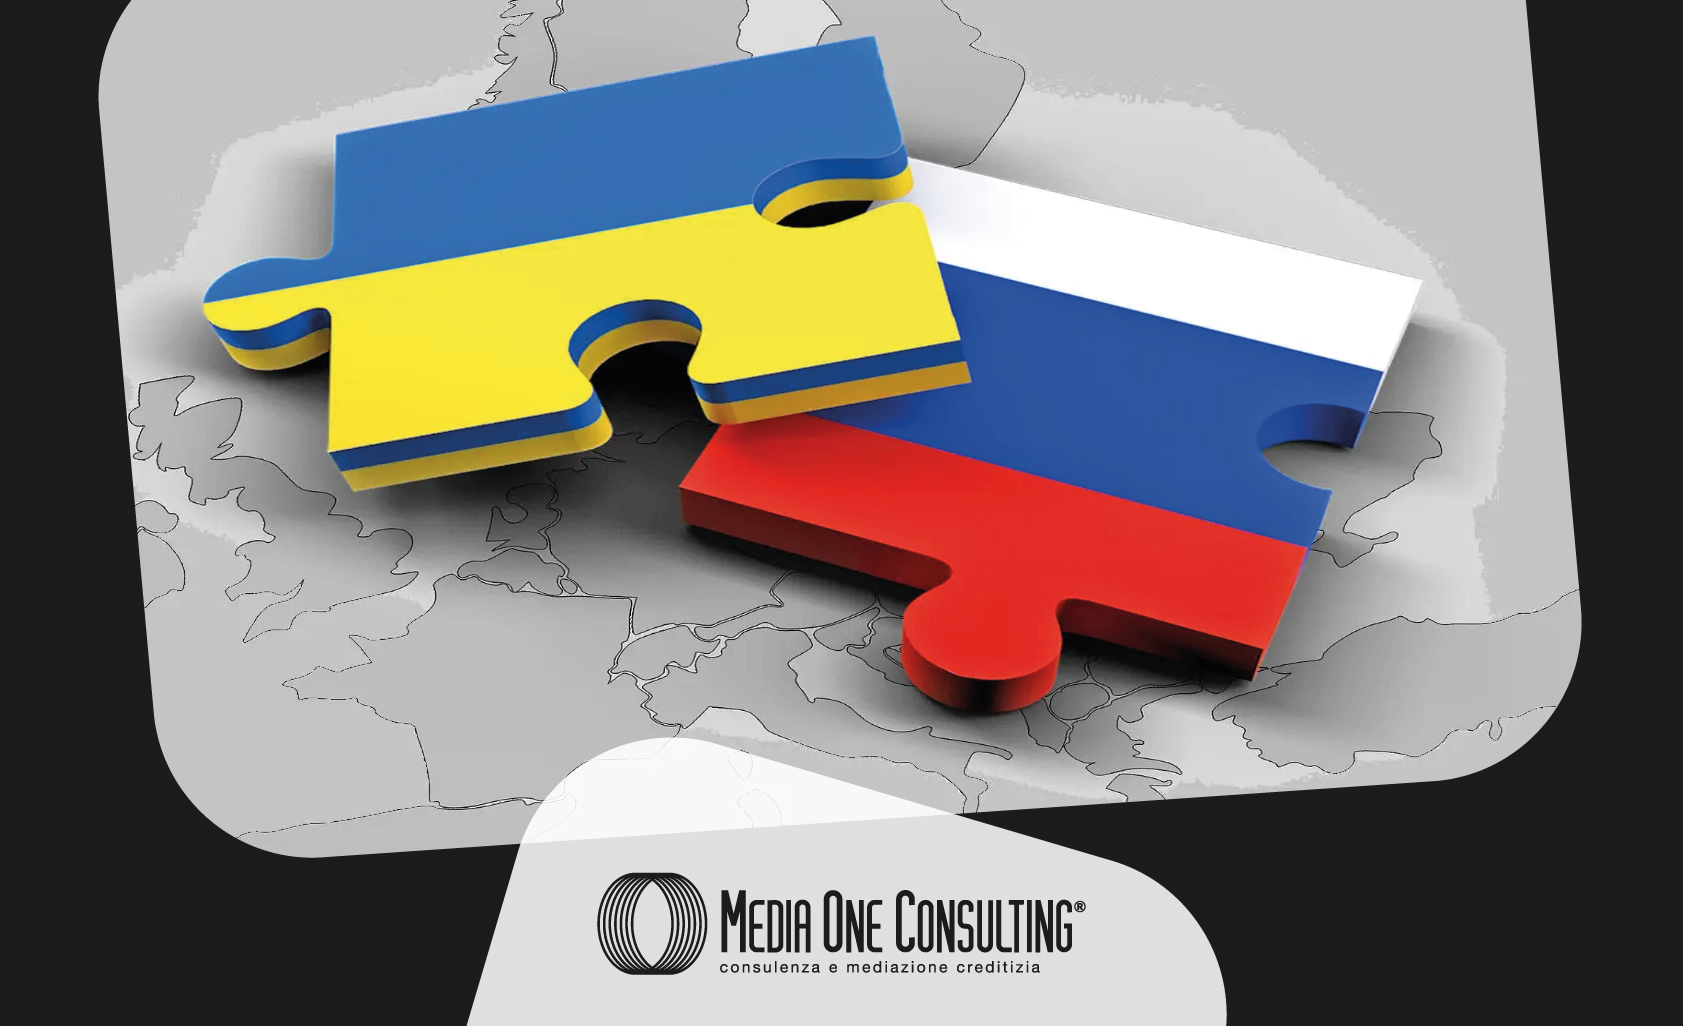 Crisi ucraina, alle imprese colpite aiuti sul credito